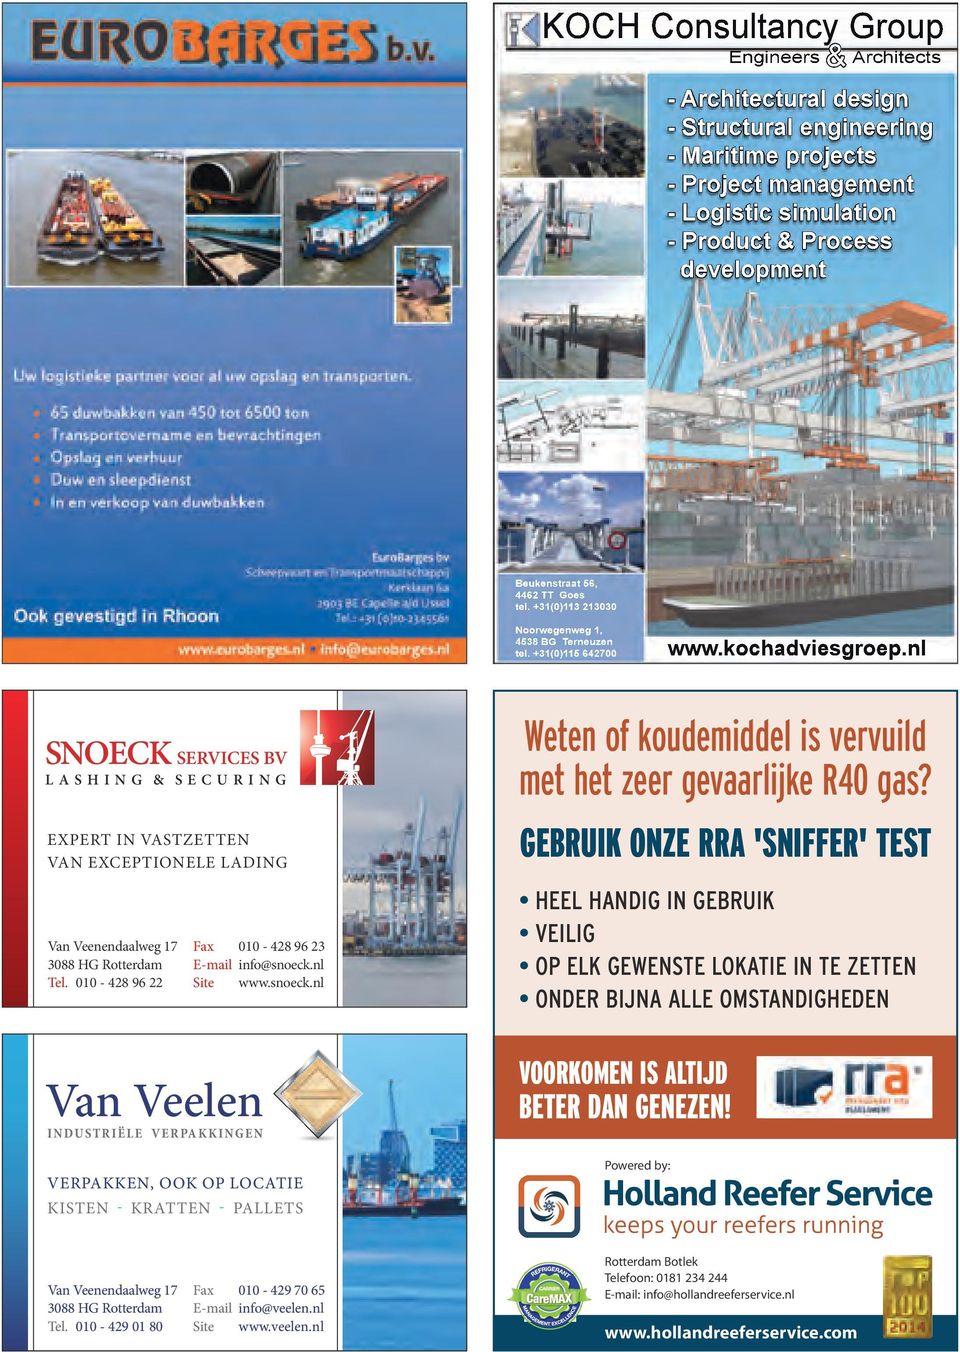 pdf 1 31-3-2014 11:23:50 snoeck services Bv lashing & securing ExpERt in VastzEttEn Van ExcEptionElE lading Van Veenendaalweg 17 3088 HG Rotterdam Tel.